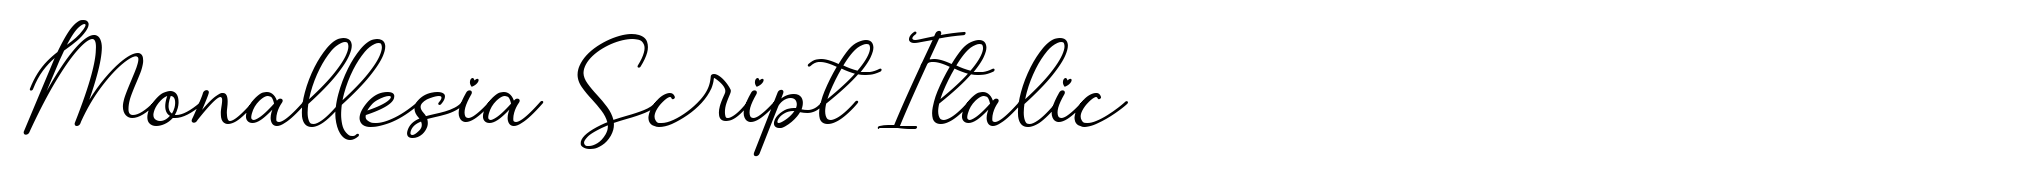 Monallesia Script Italic image